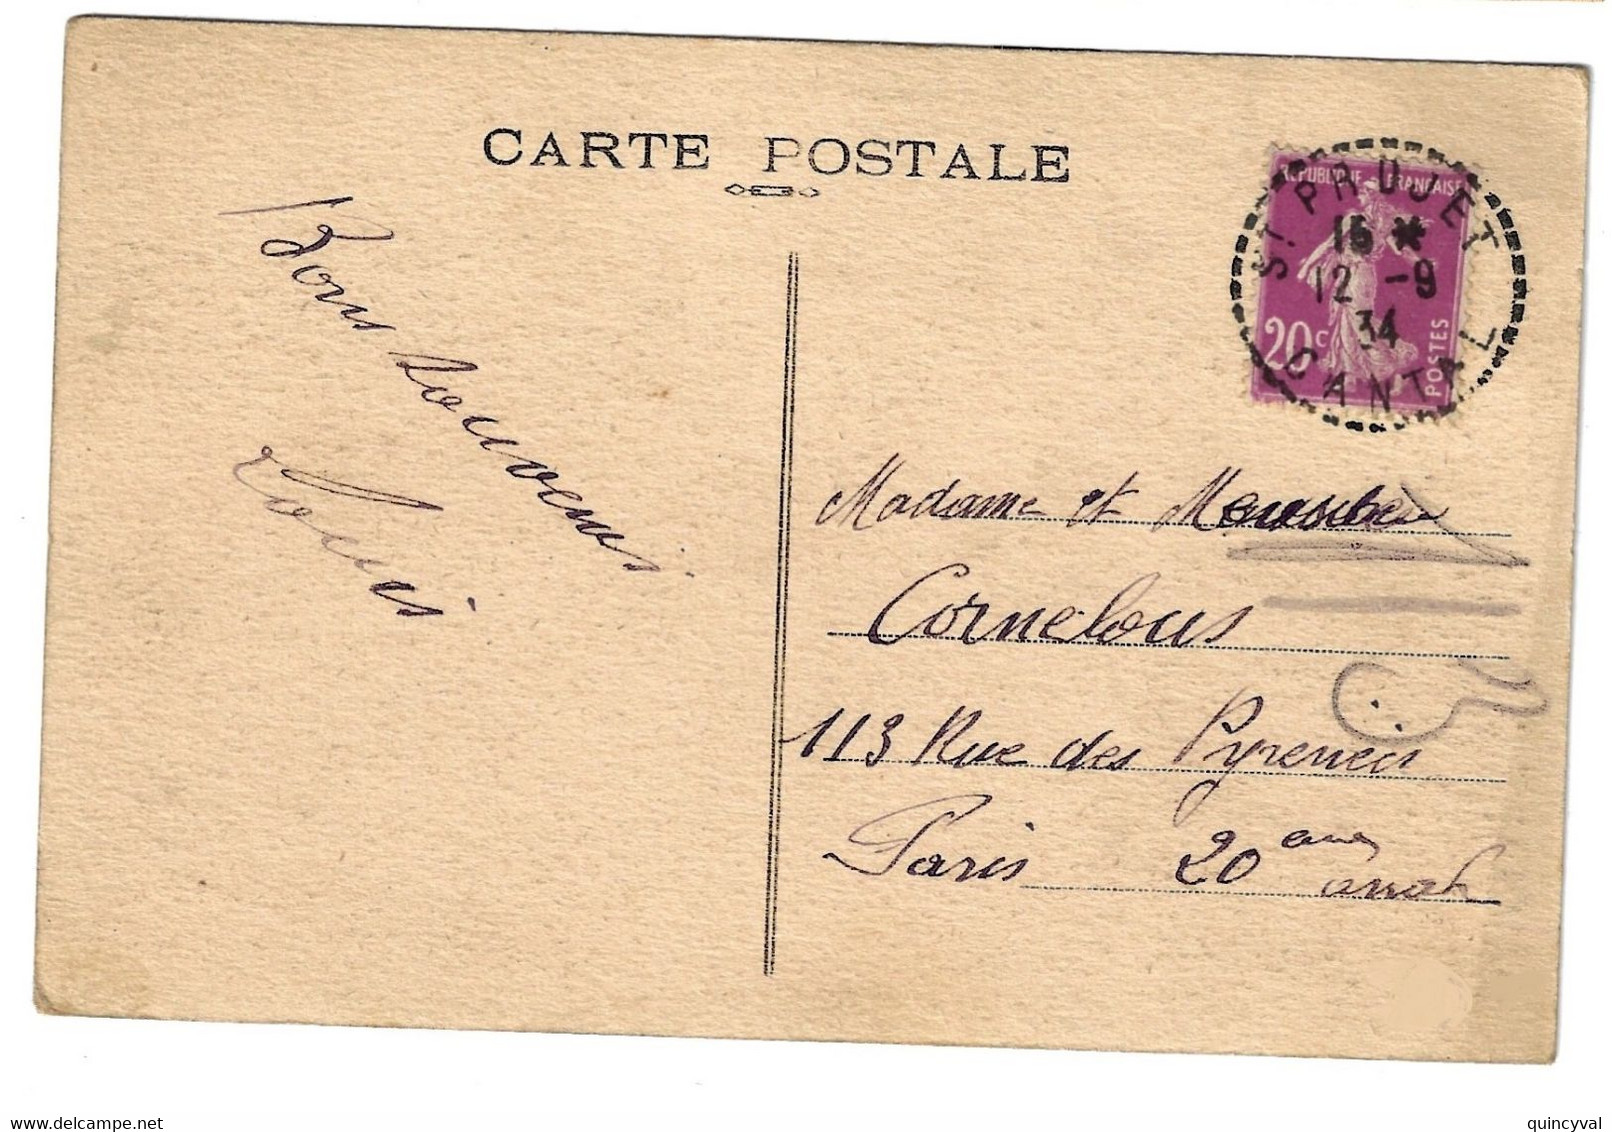 St PRUJET Cantal Carte Postale 20c Semeuse Yv 190 Ob 12 9 1934 Pointillé FB04 Lautier B4 - Cachets Manuels